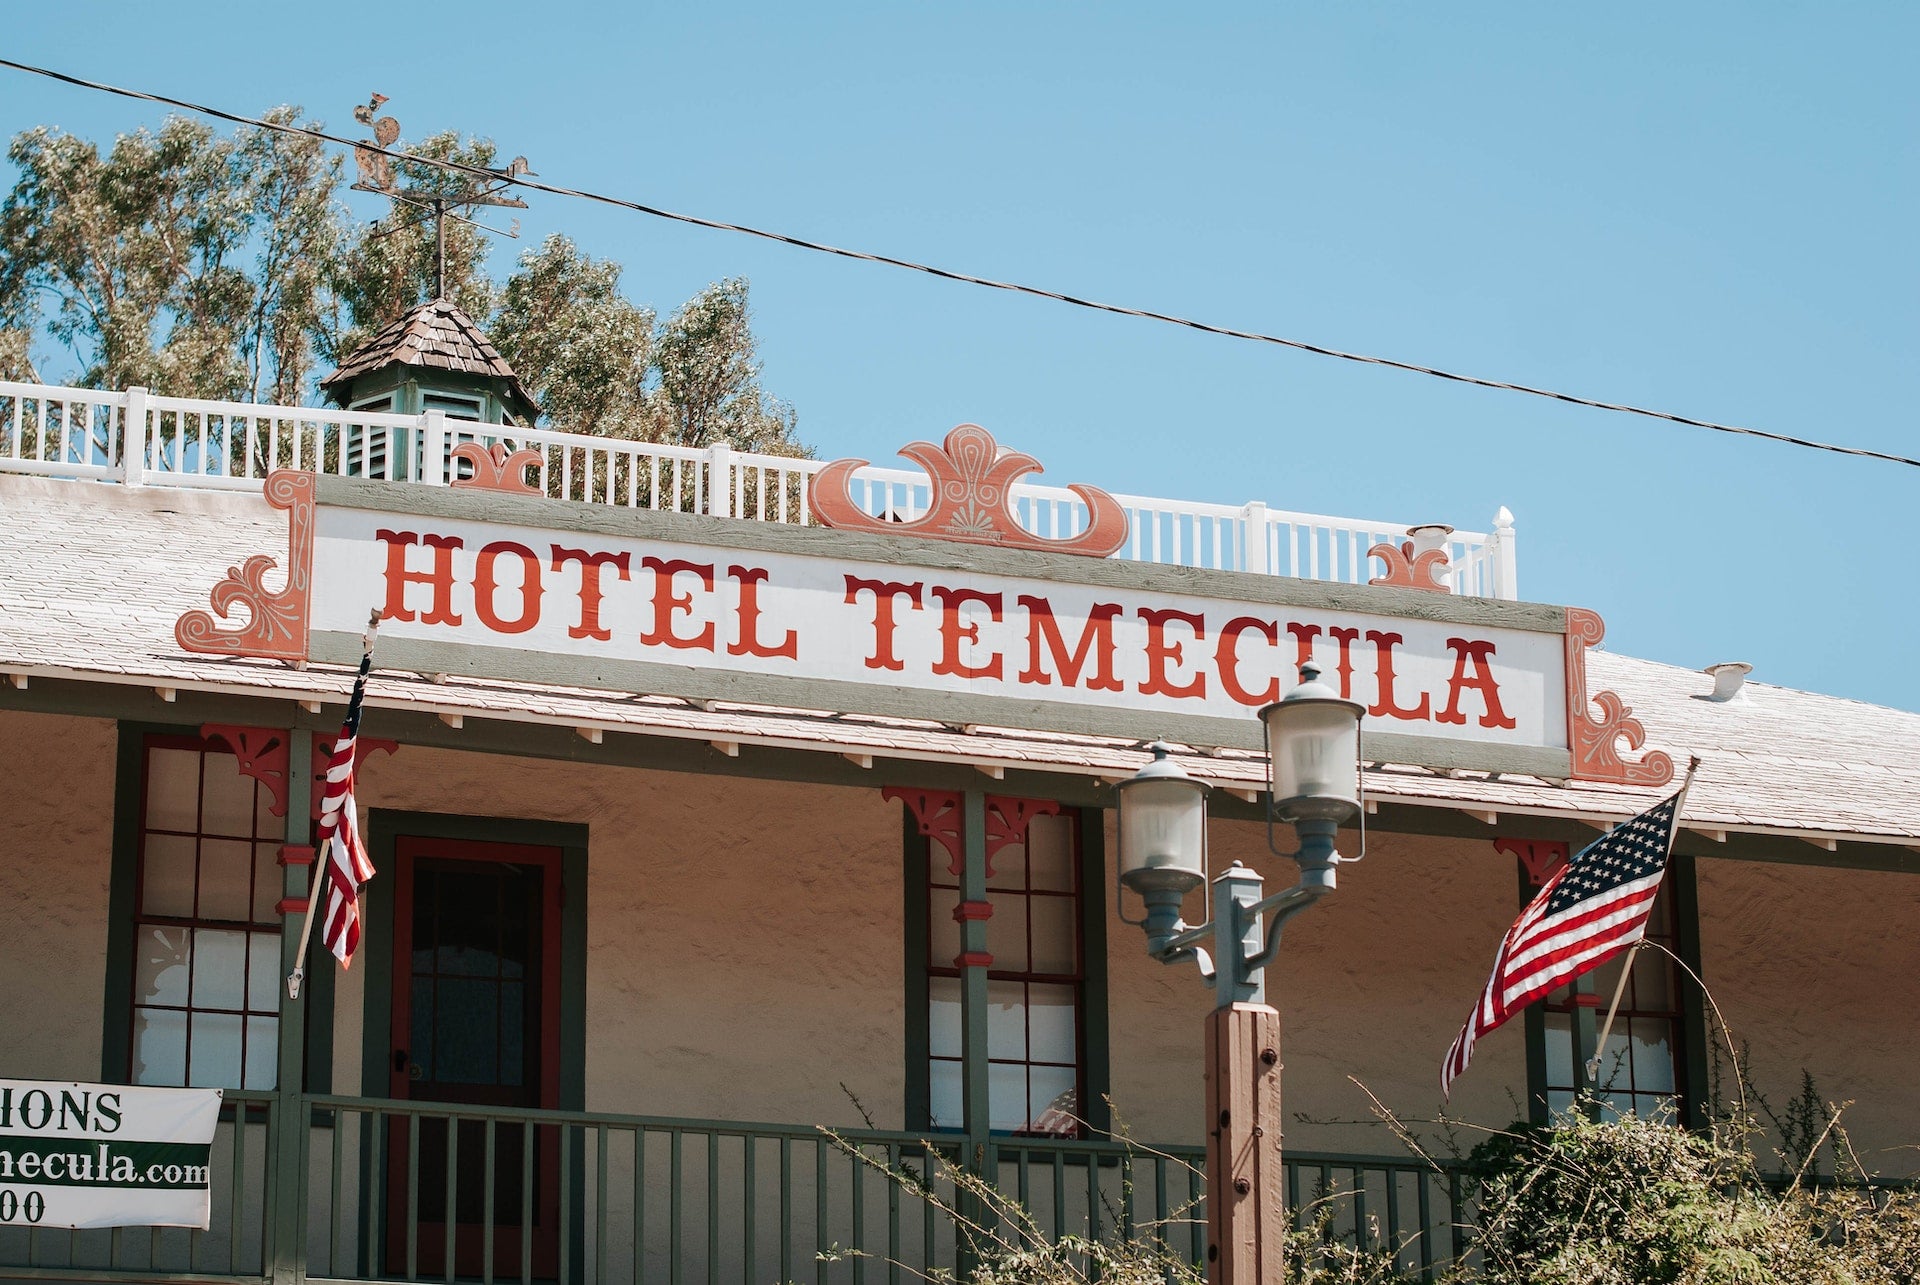 Panneau de style occidental de l'hôtel Temecula.